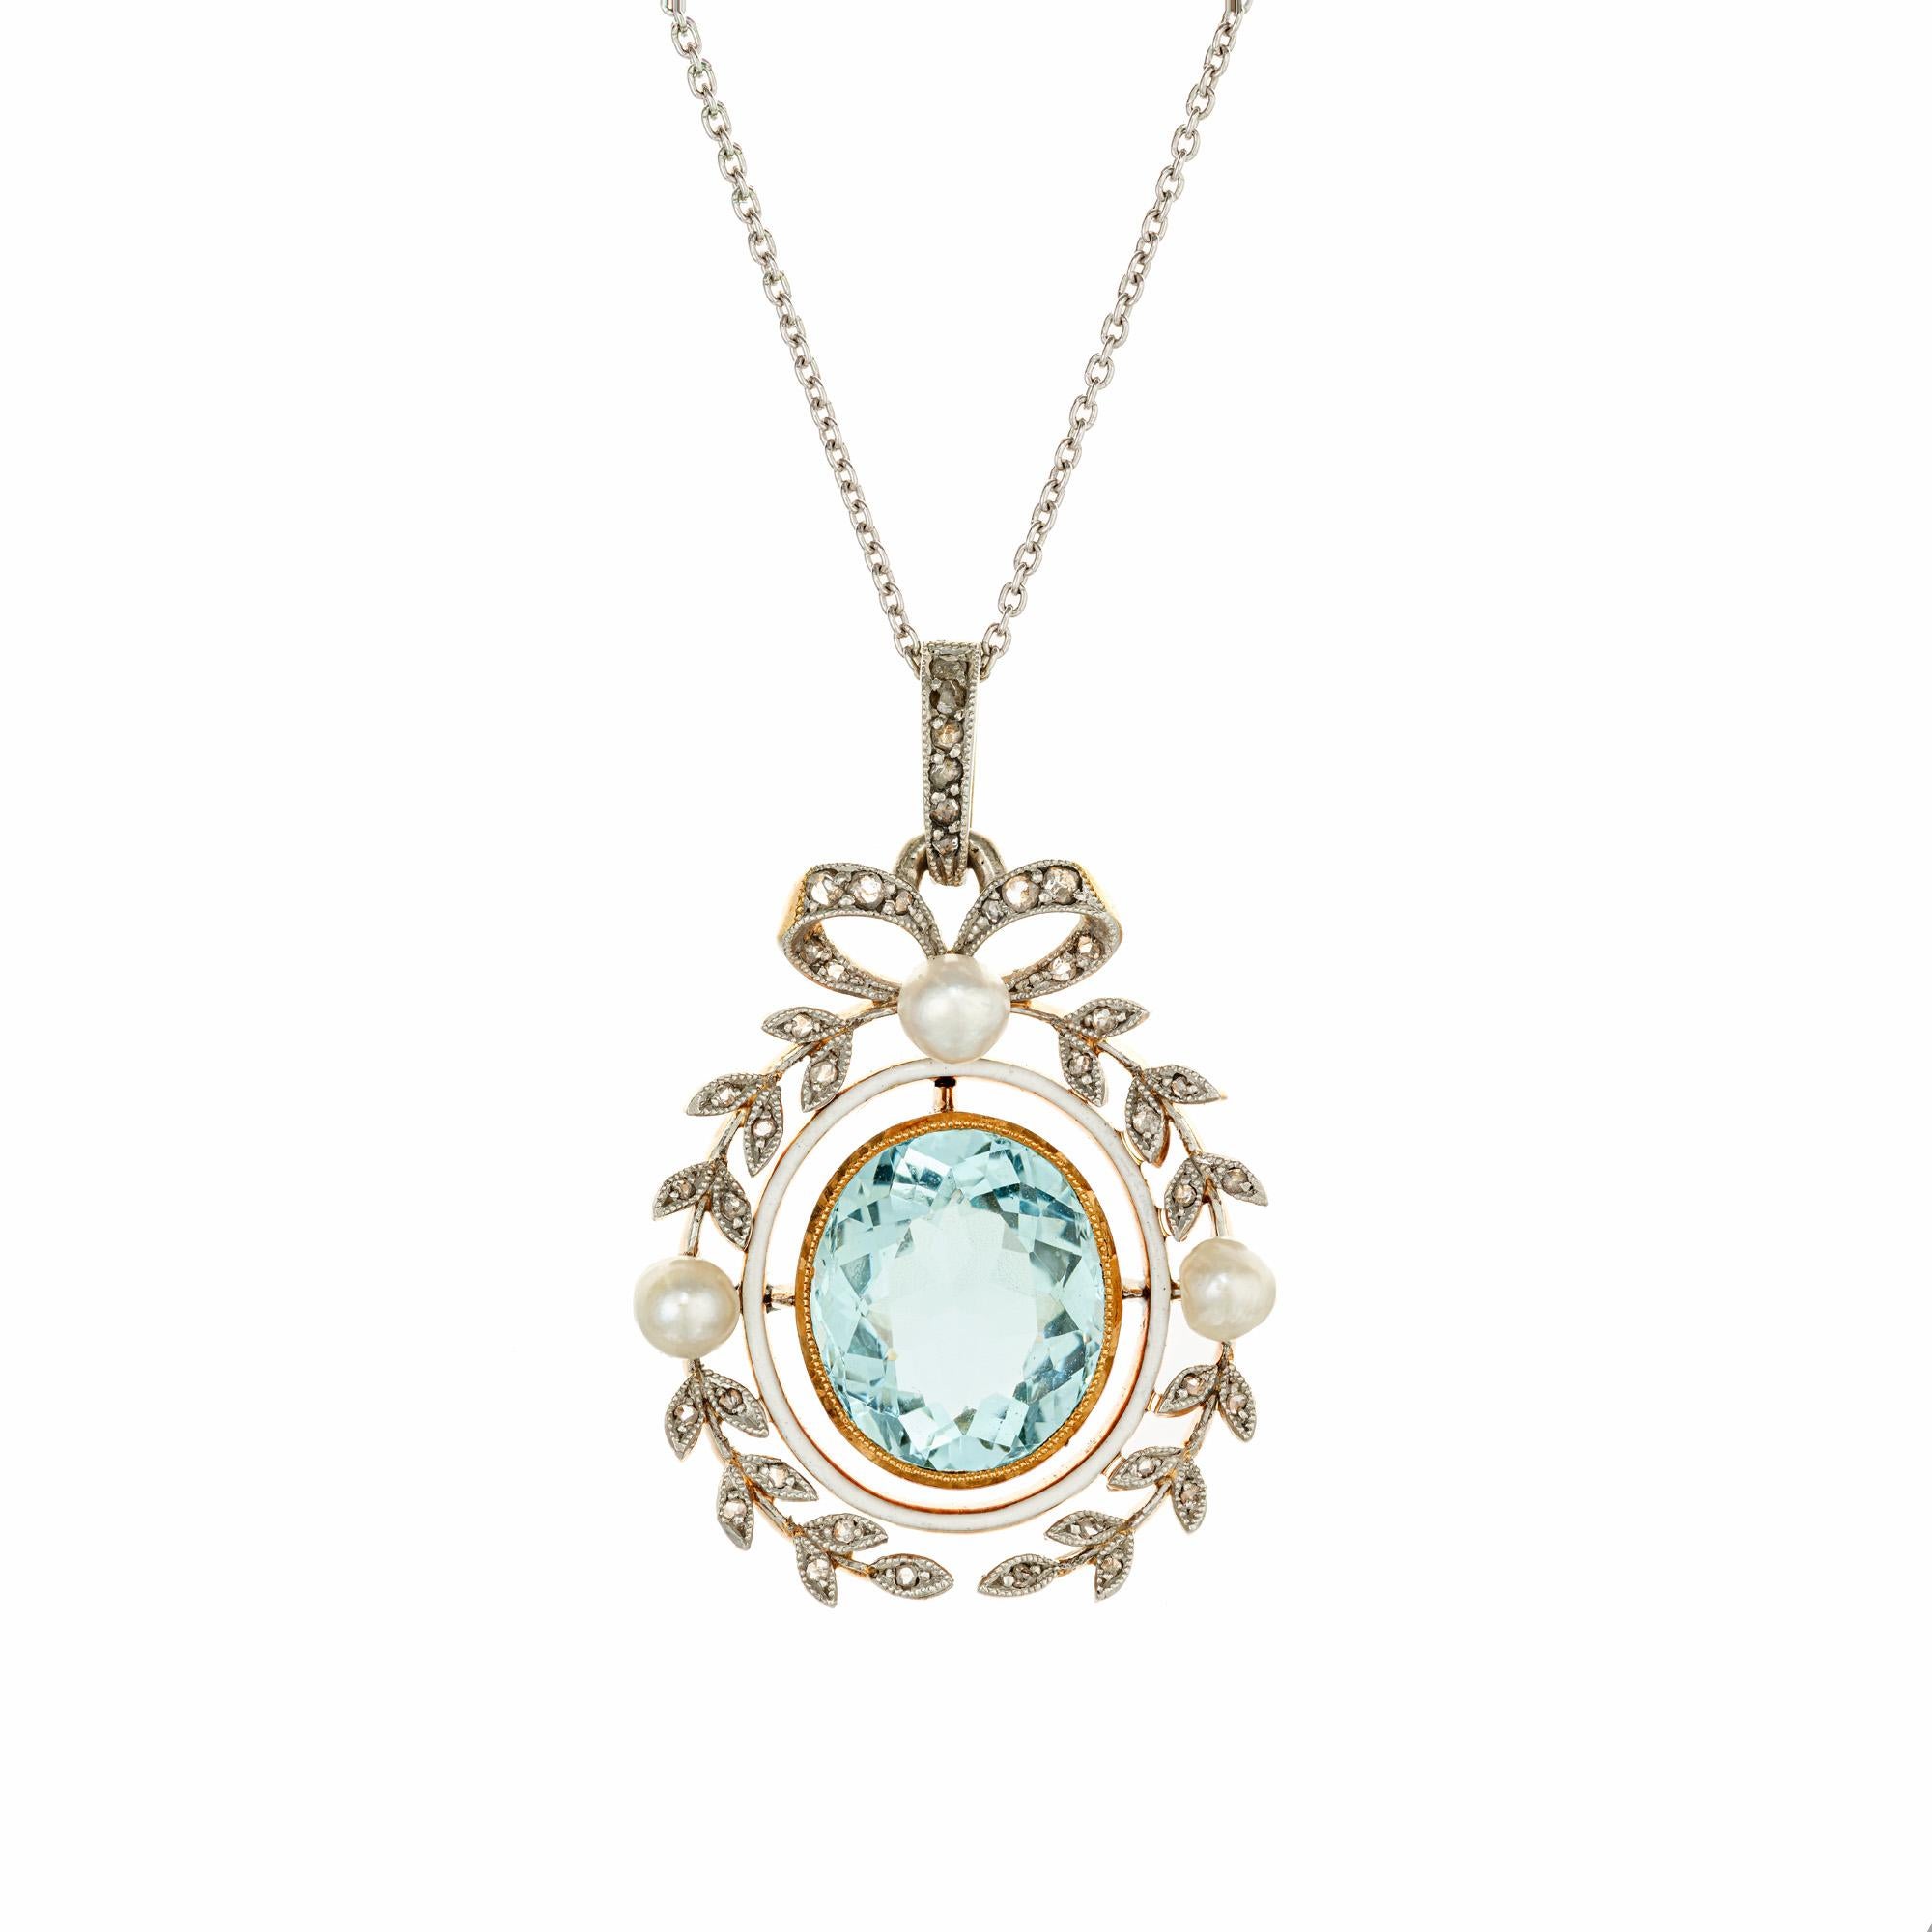 Collier pendentif aqua, perles et diamants des années 1860, fabriqué à la main pendant la guerre civile. Pierre centrale ovale bleu clair de 7,00 ct, sertie dans une monture en platine et or jaune 14k avec 3 perles d'eau salée blanches naturelles